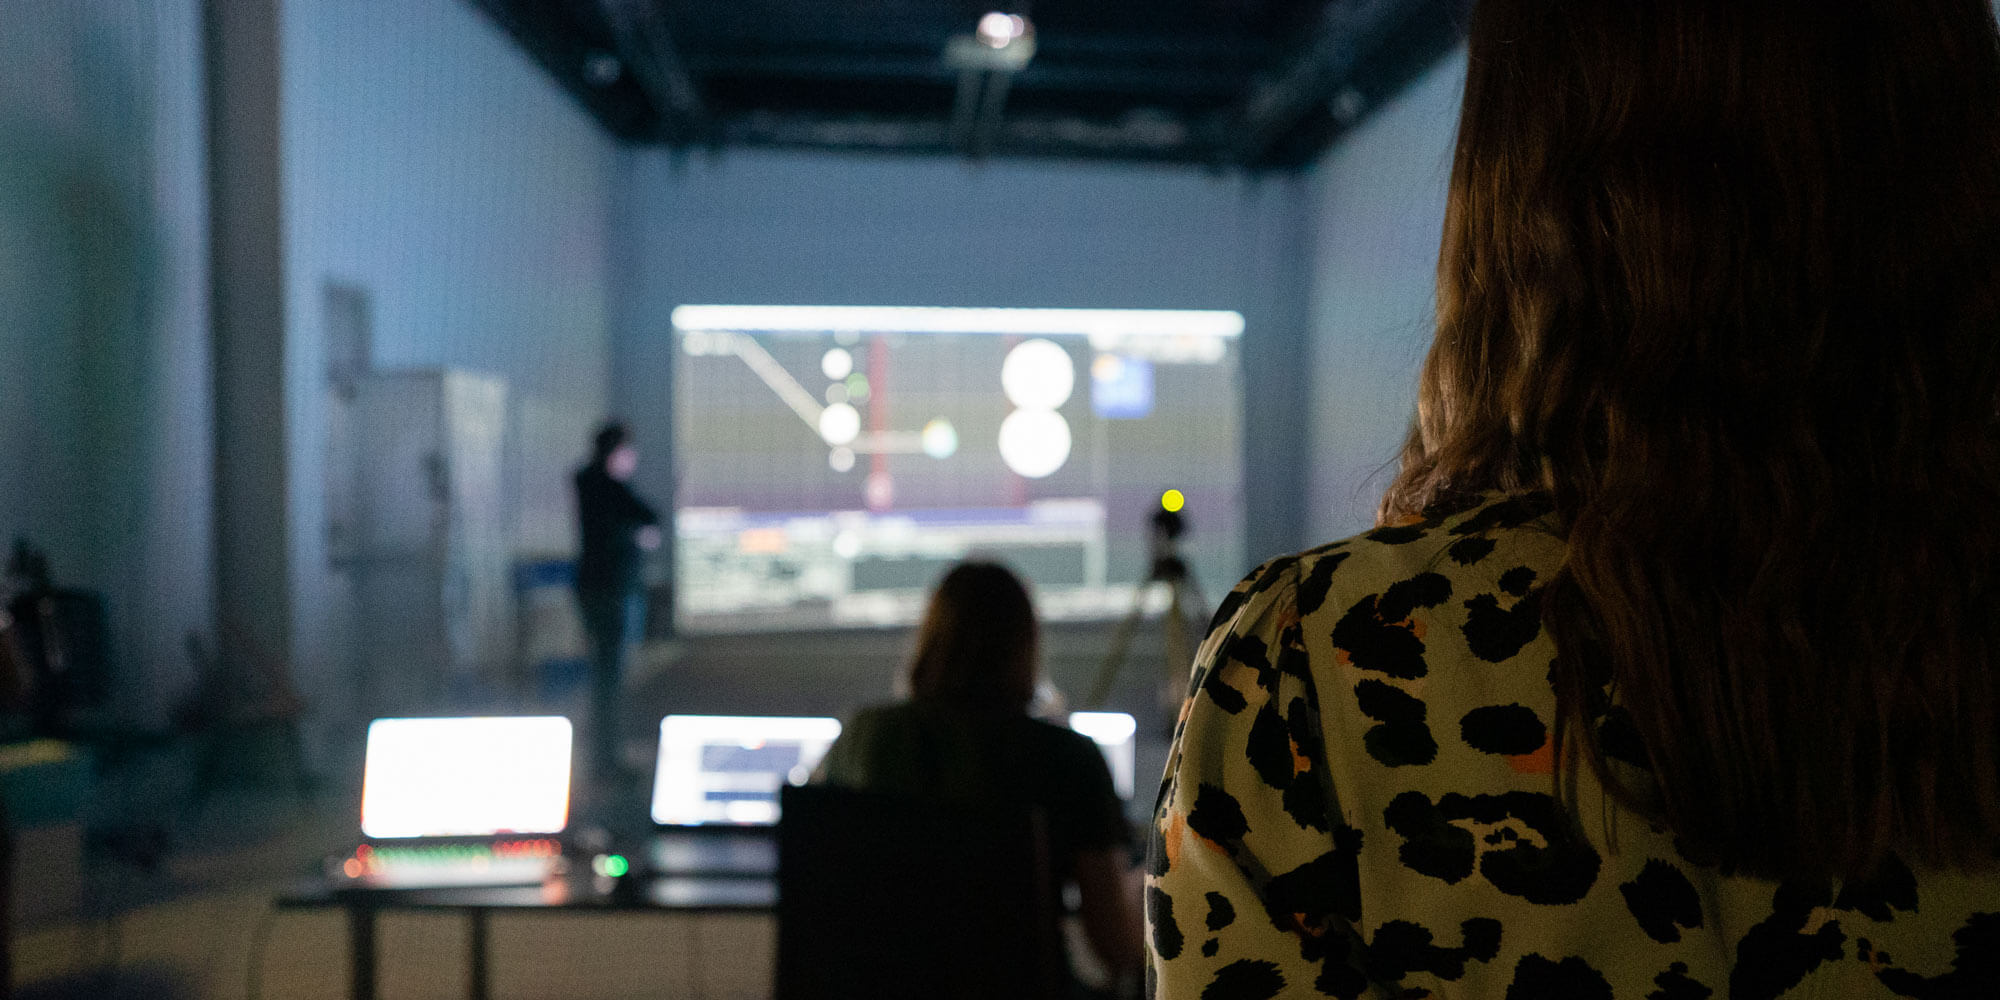 Drohnen, die zu einer digitalen Leinwand verschmelzen oder mit Licht malen: Ein Workshop des Ars Electronica Futurelab im Rahmen der Gigabit Academy zeigte die Kunst der Schwarm-Robotik.